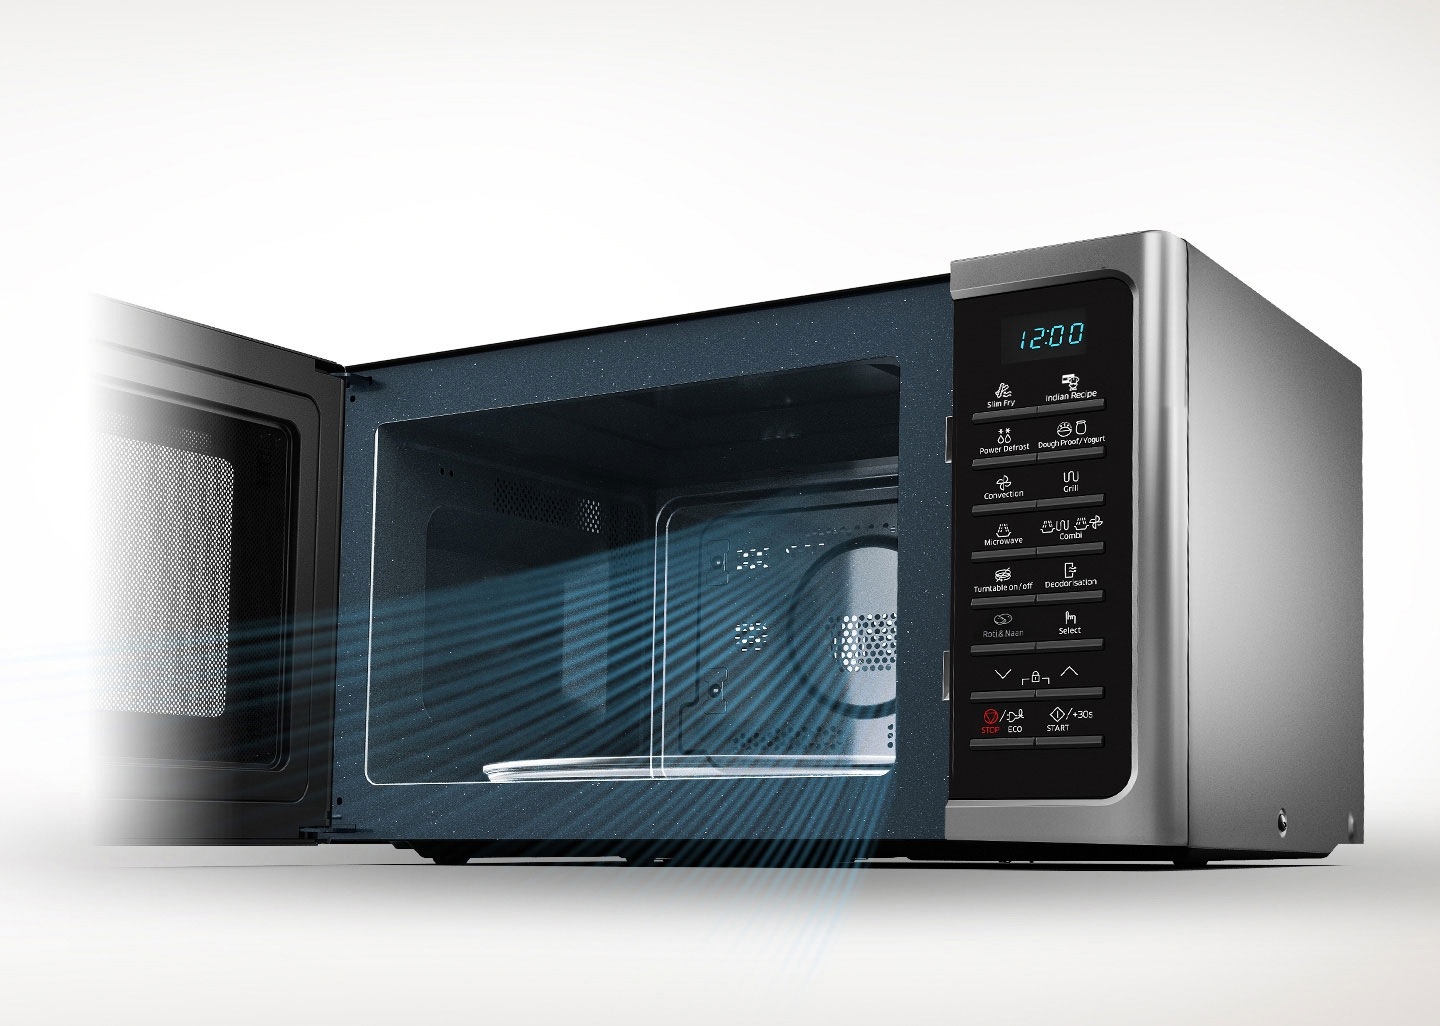 Microwave that keeps food fresh